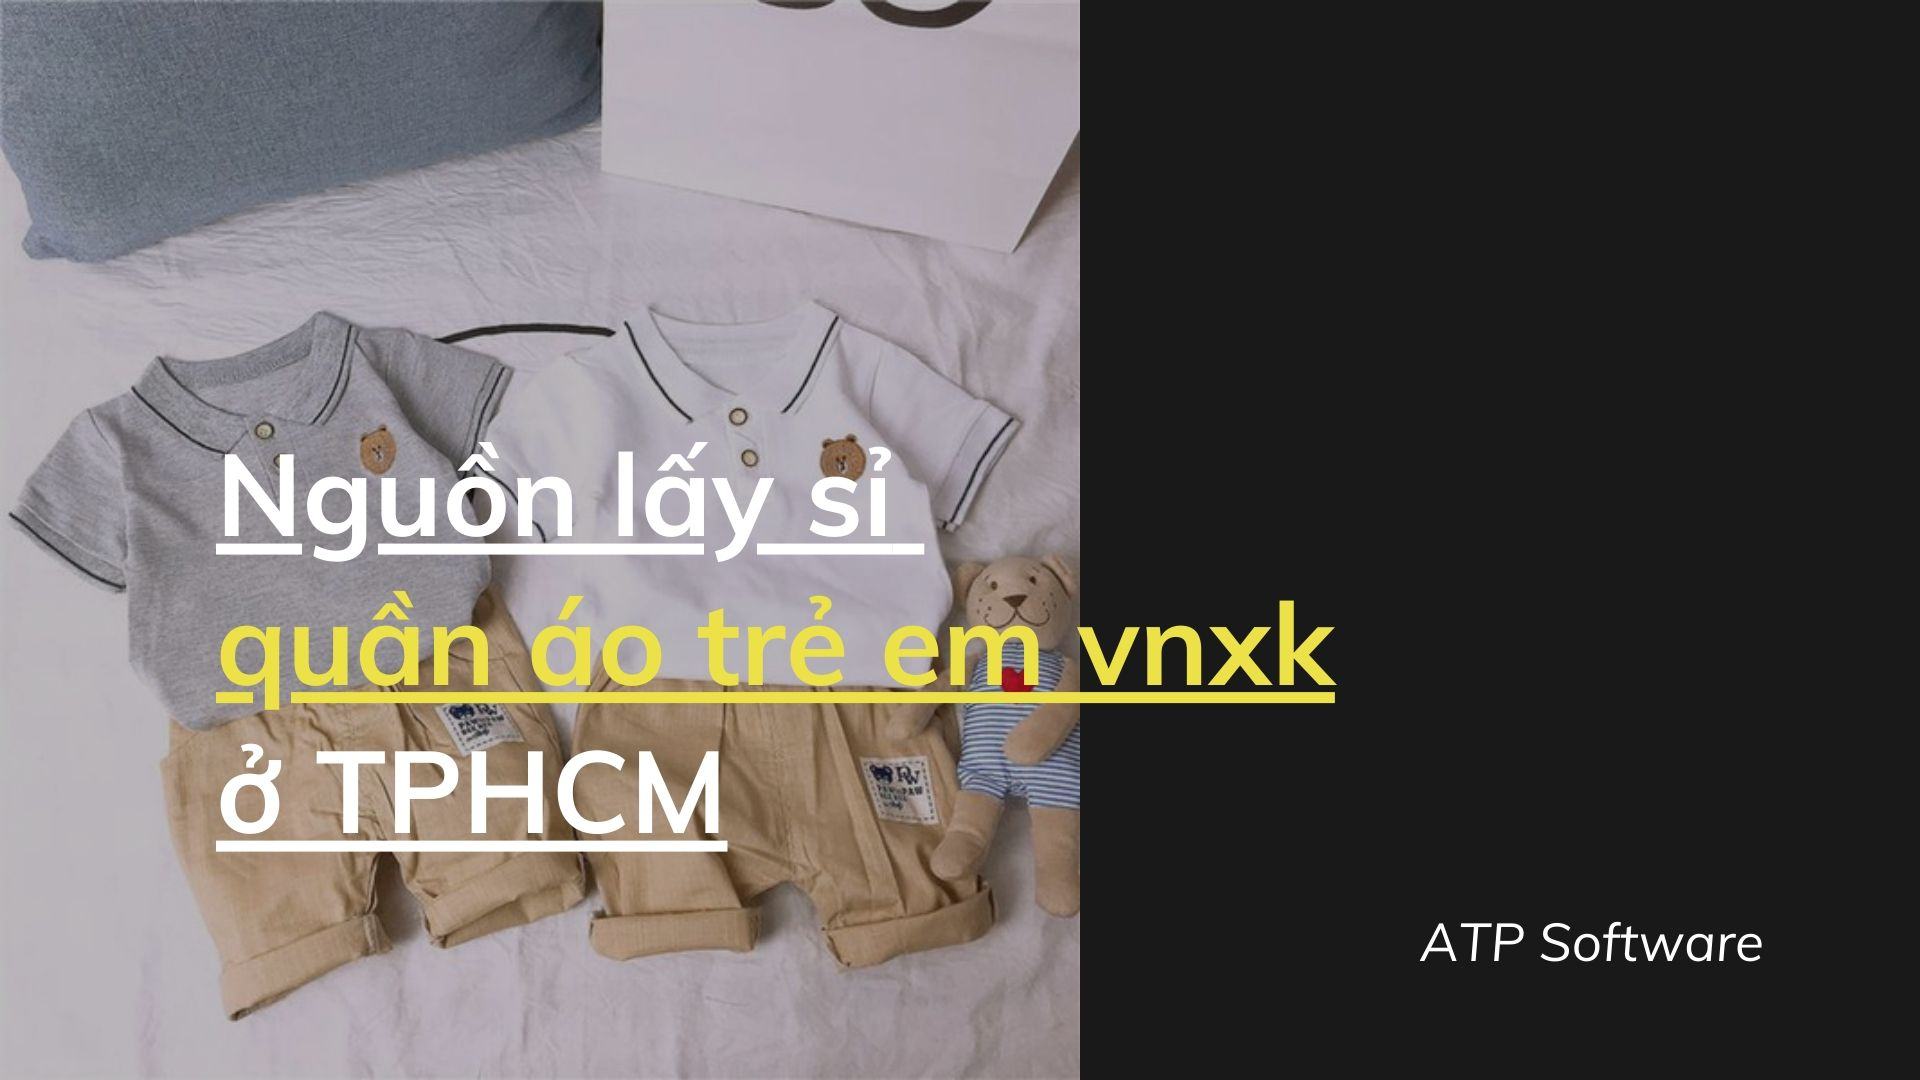 Nguồn lấy sỉ quần áo trẻ em vnxk ở TPHCM